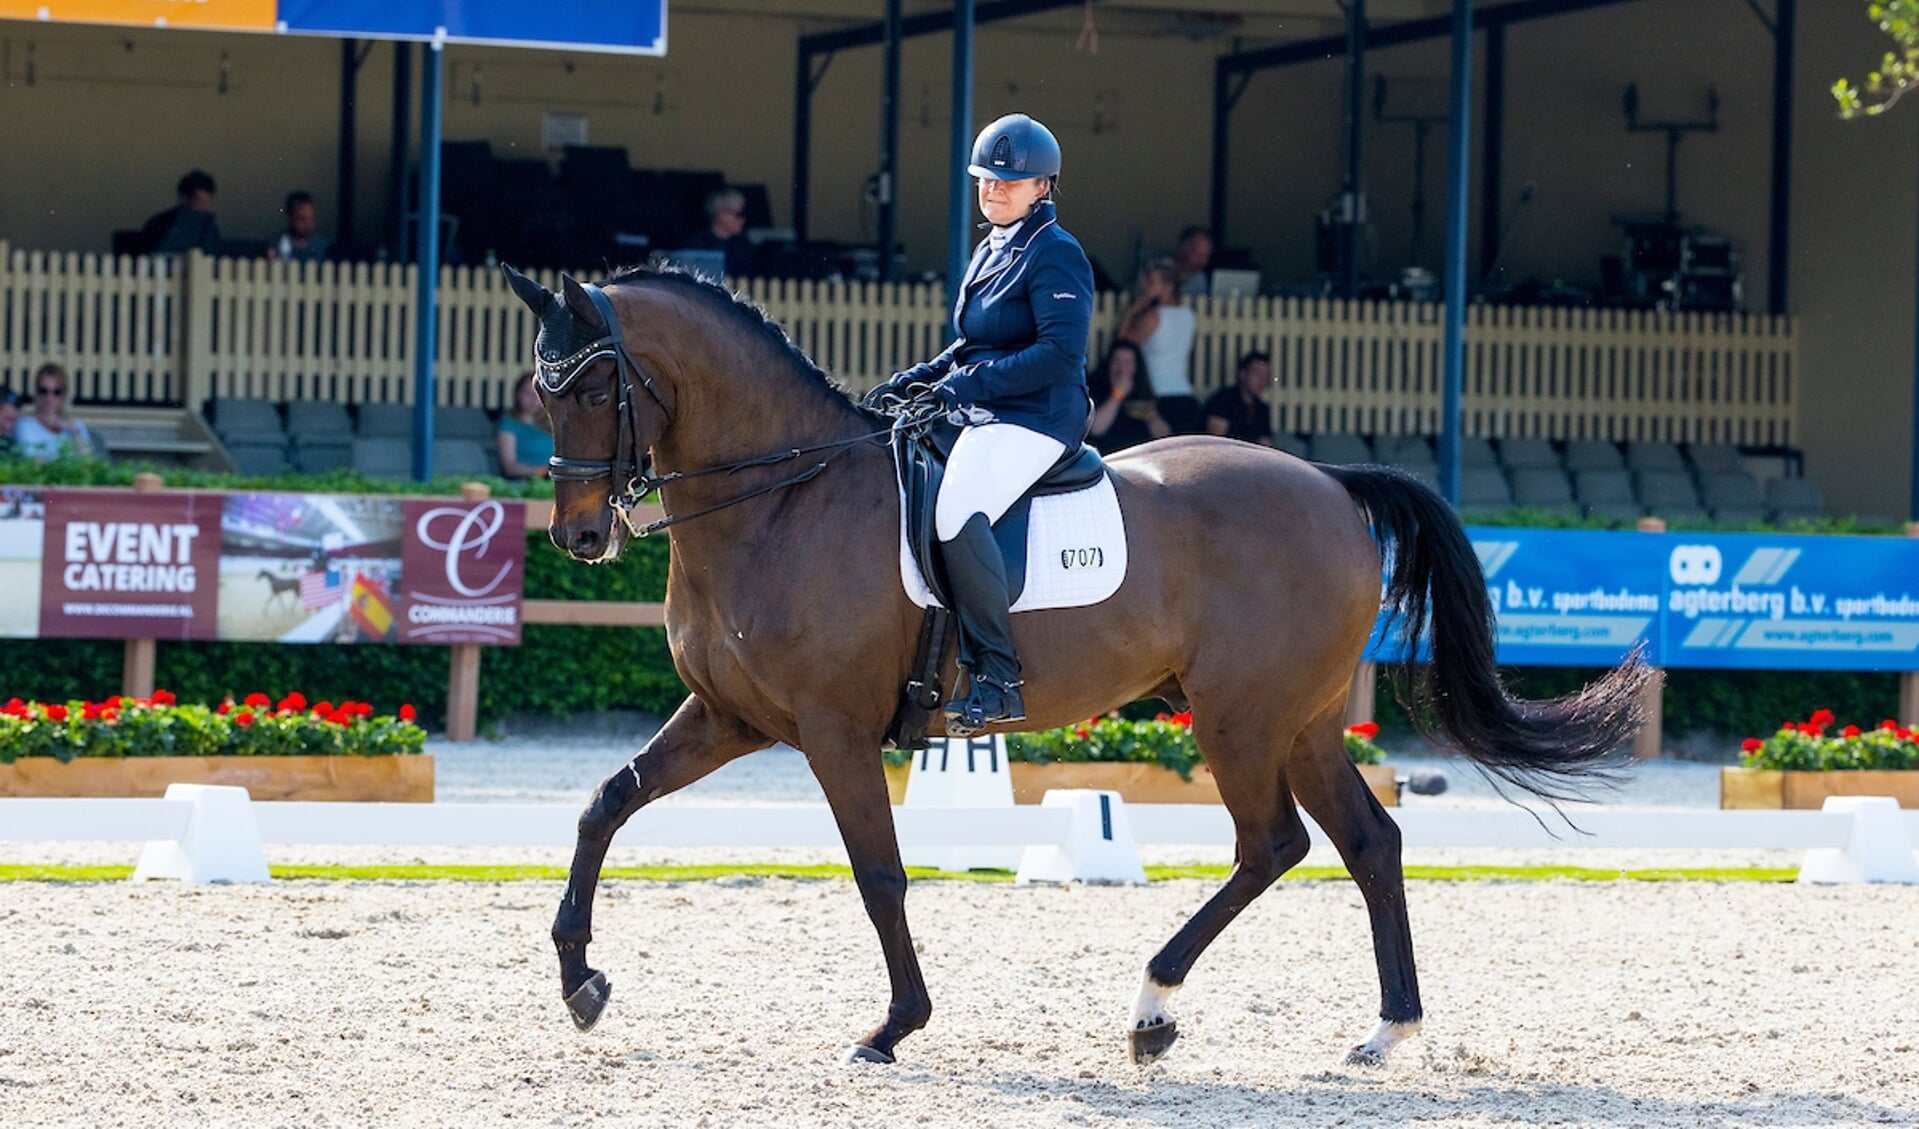 Yvette Overgoor hier met een ander paard genaamd Ace
NK Dressuur 2021
© DigiShots